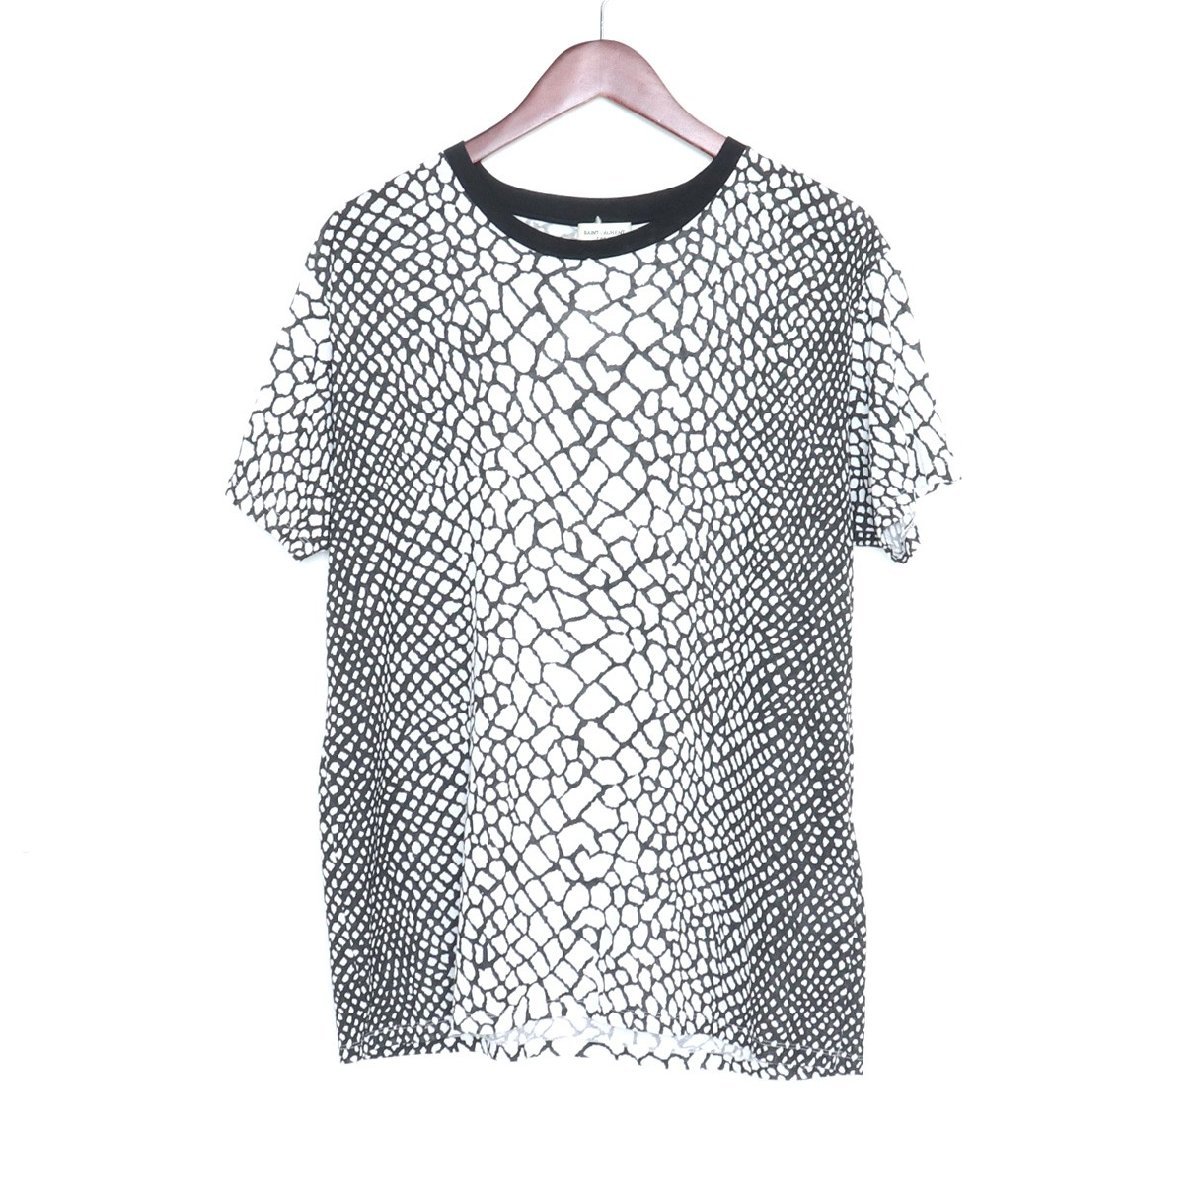 サンローランパリ SAINT LAURENT PARIS クロコダイルプリントTシャツ 半袖カットソー ホワイト/ブラック Mサイズ 393499_画像1